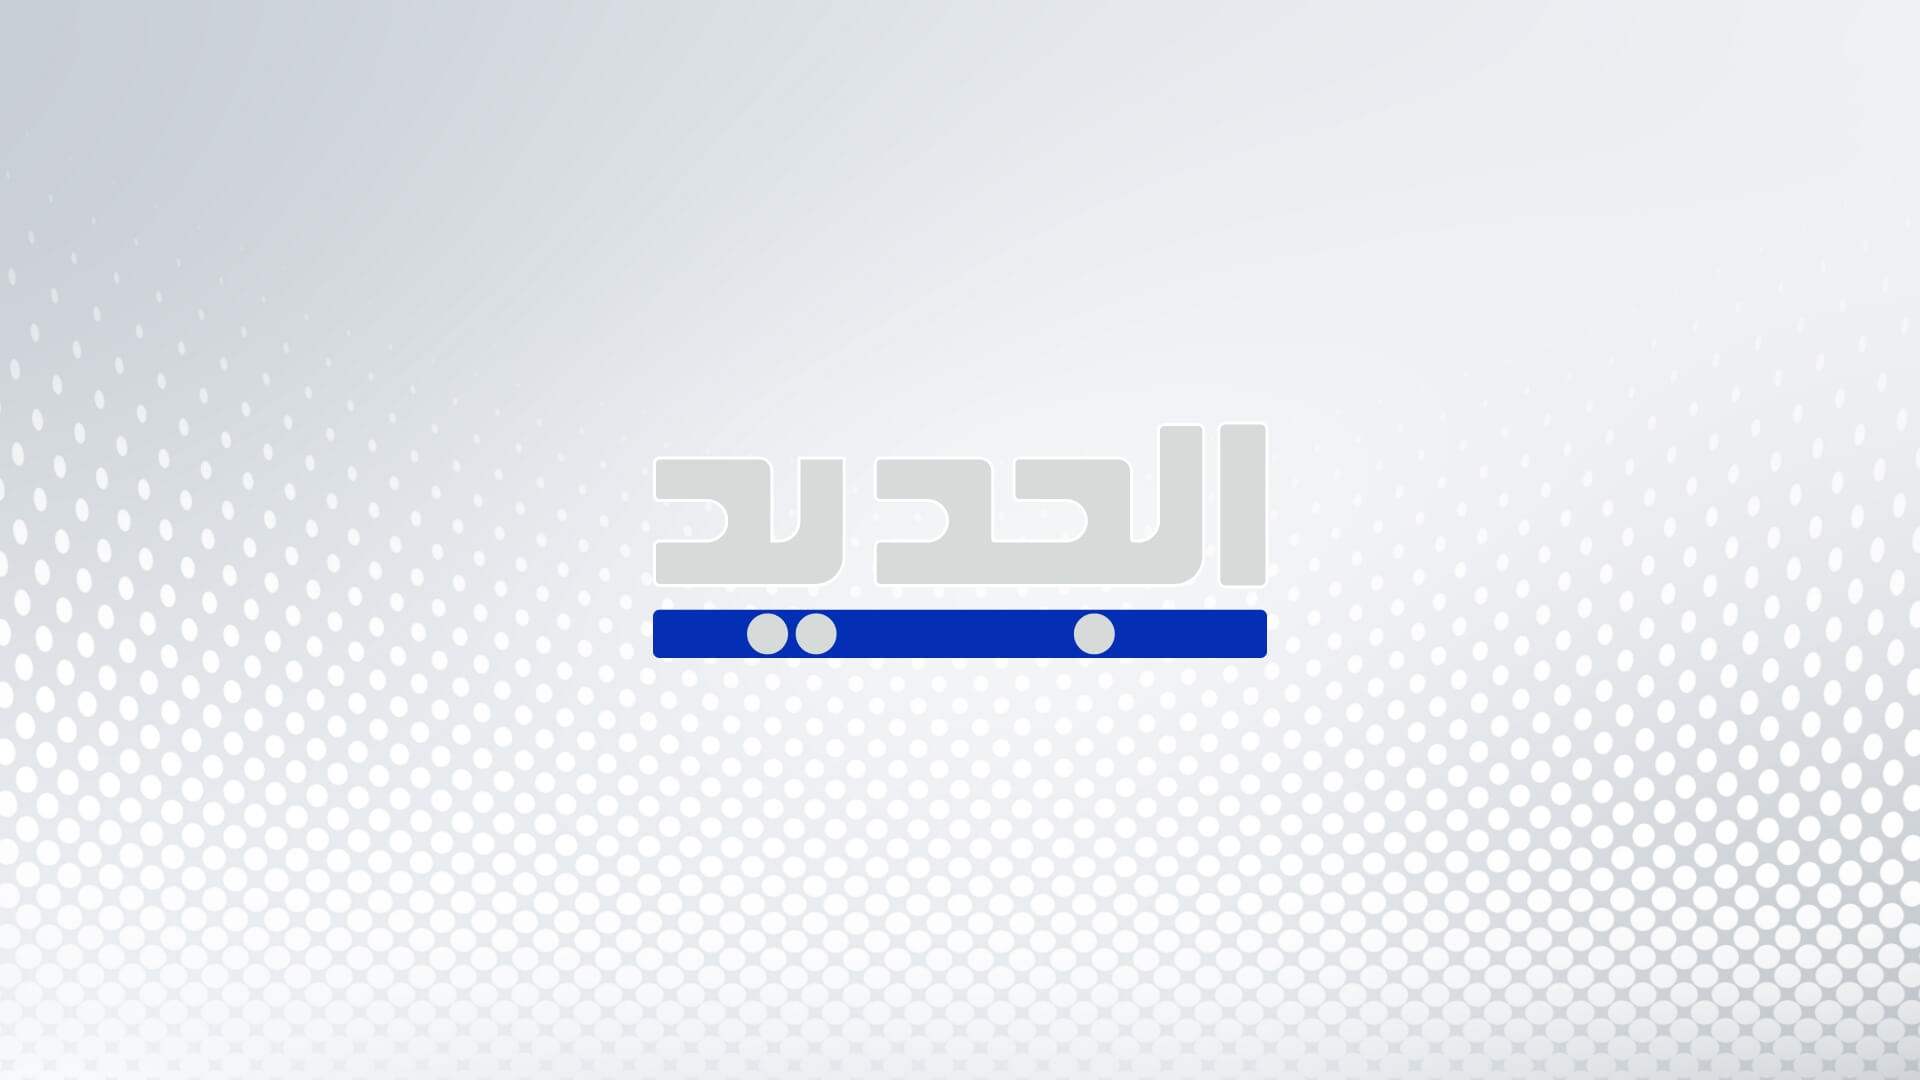 باسل العريضي يتبلغ قرار فصله من "دوشيه فيللي" بسبب تغريدة!